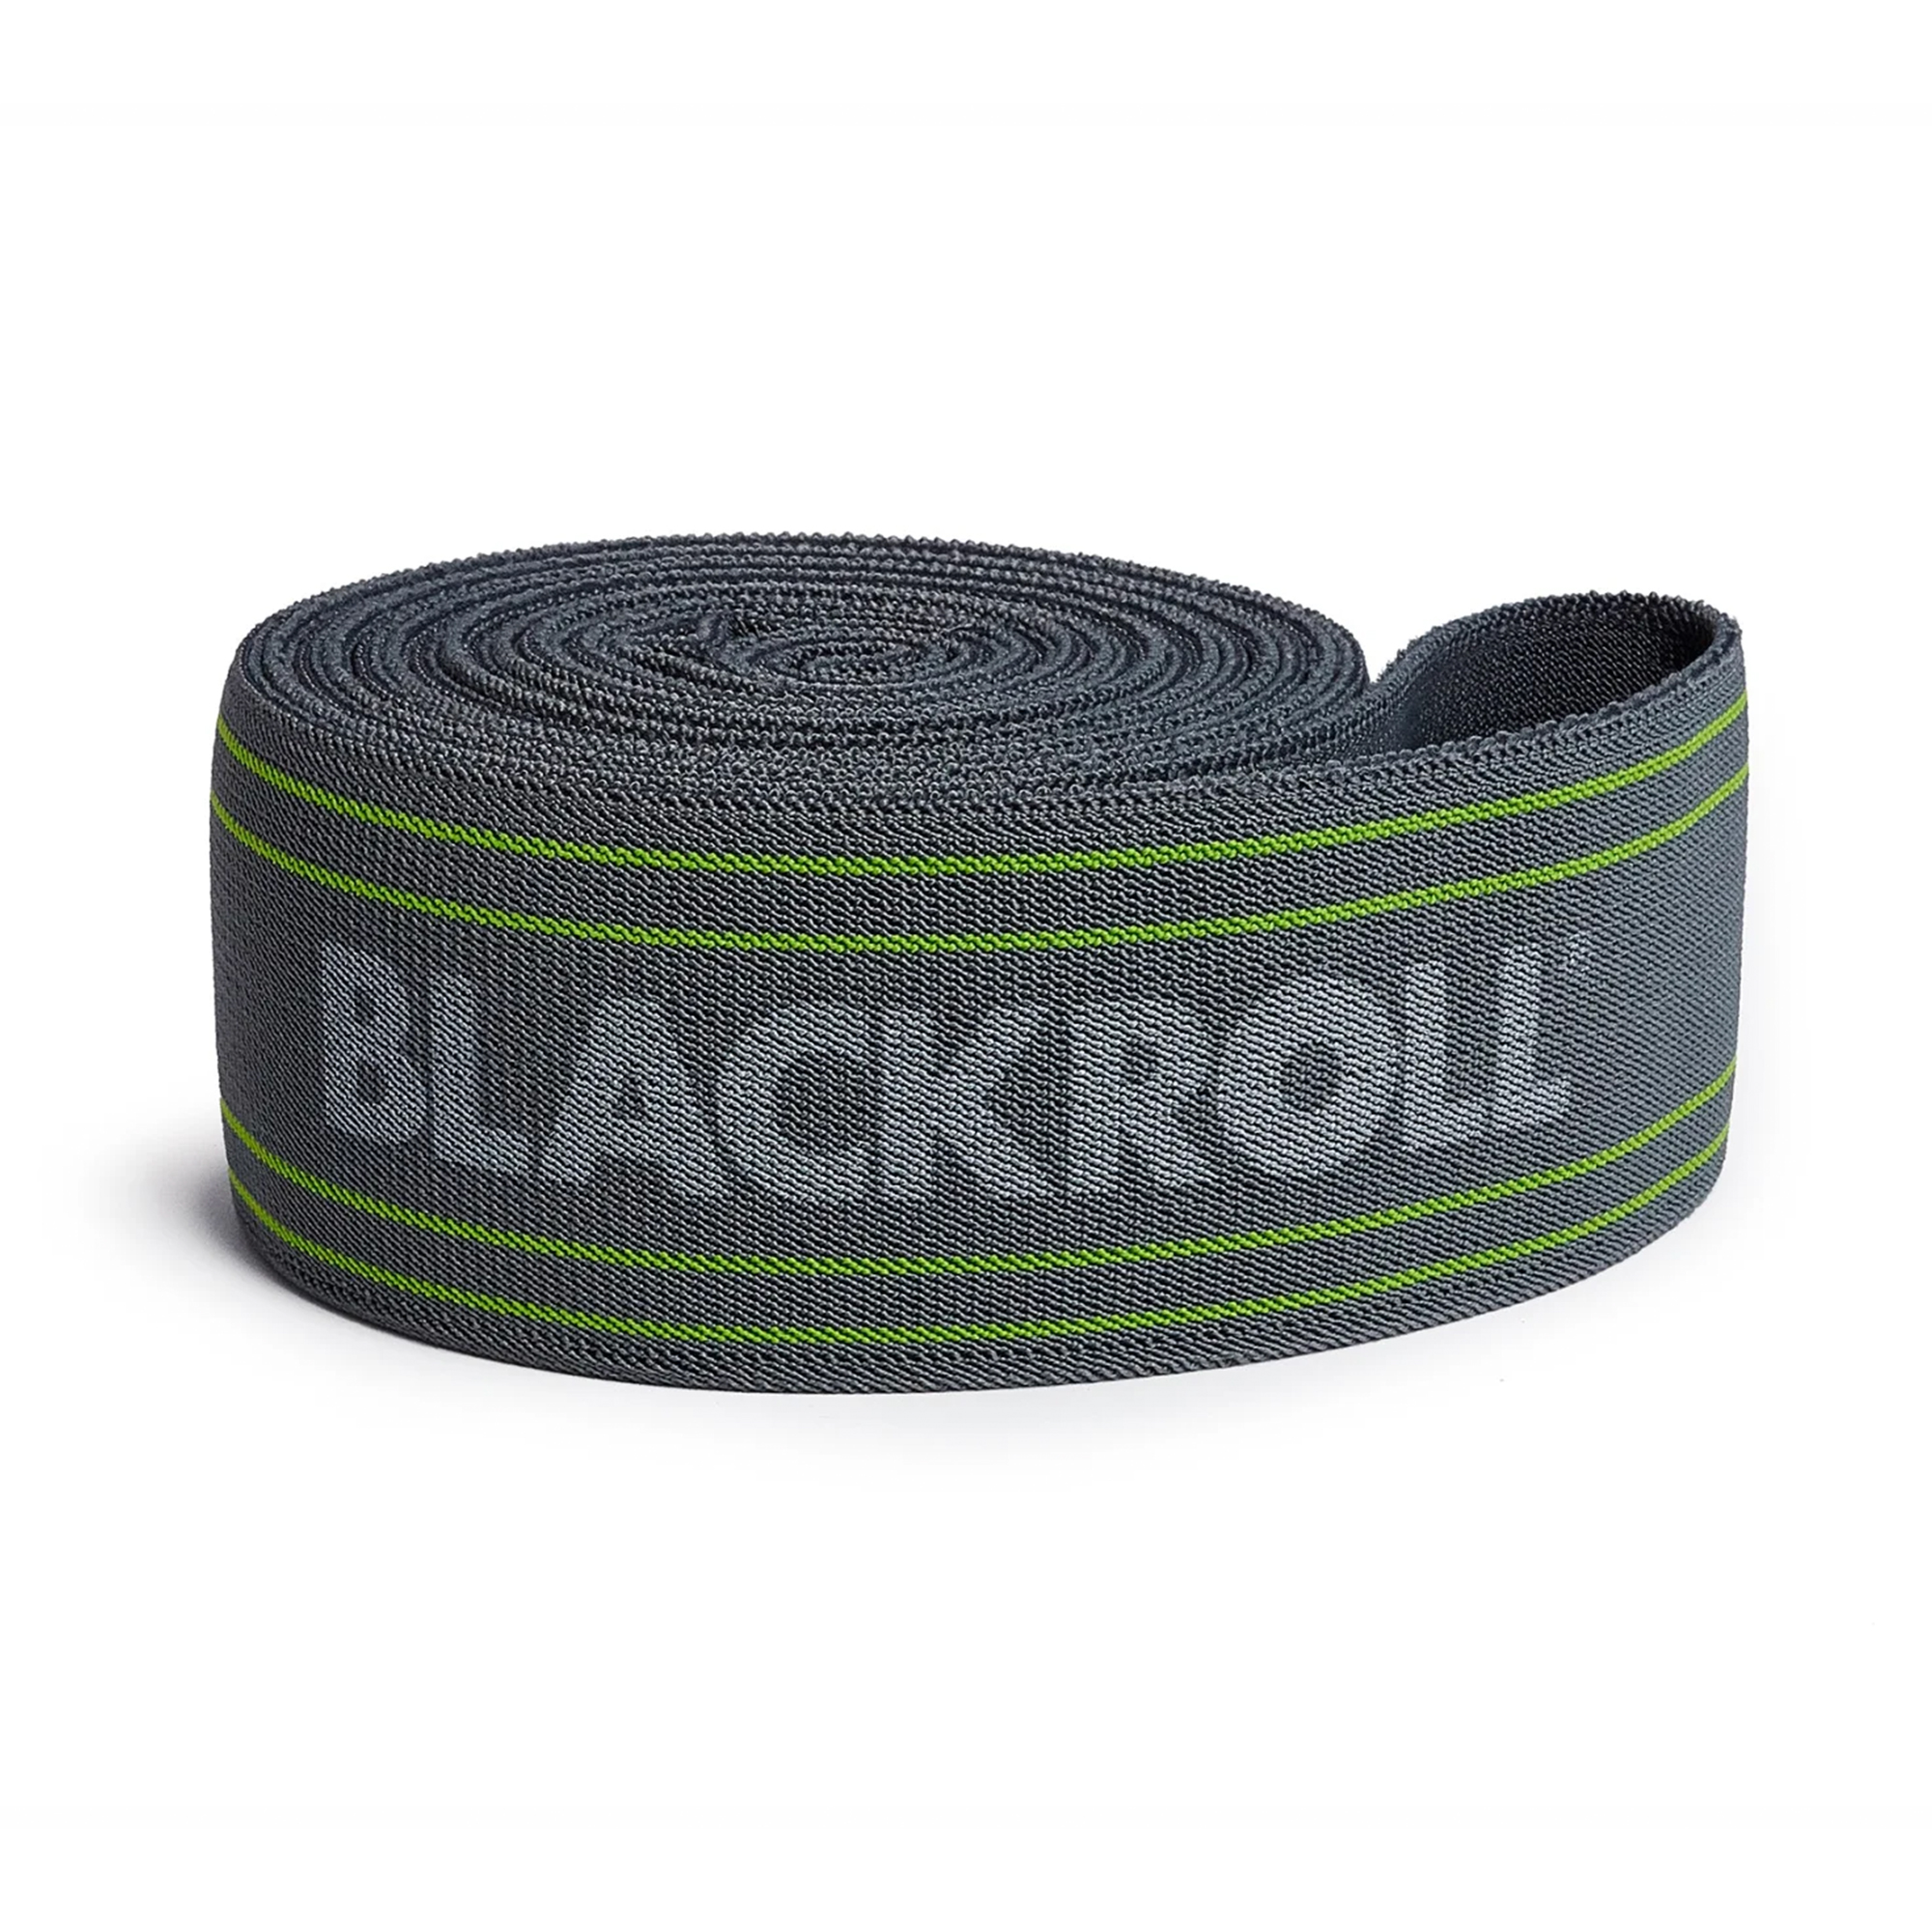 Blackroll Resist Band Træningselastik - Strong (190 cm x 6 cm) thumbnail